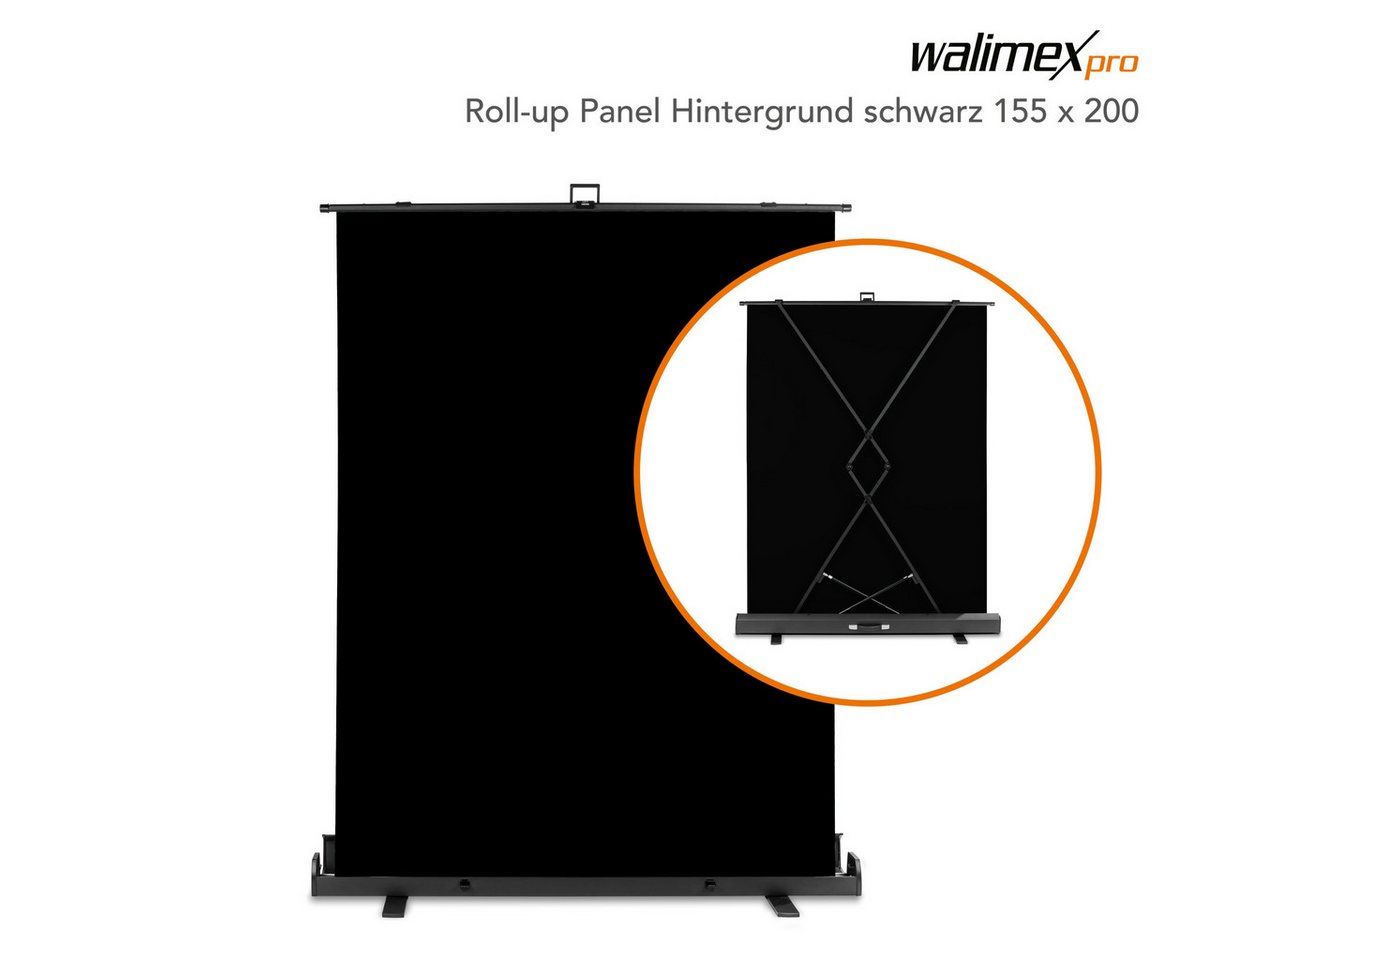 Walimex Pro Fotohintergrund Roll-up Panel Hintergrund schw.155x200 von Walimex Pro